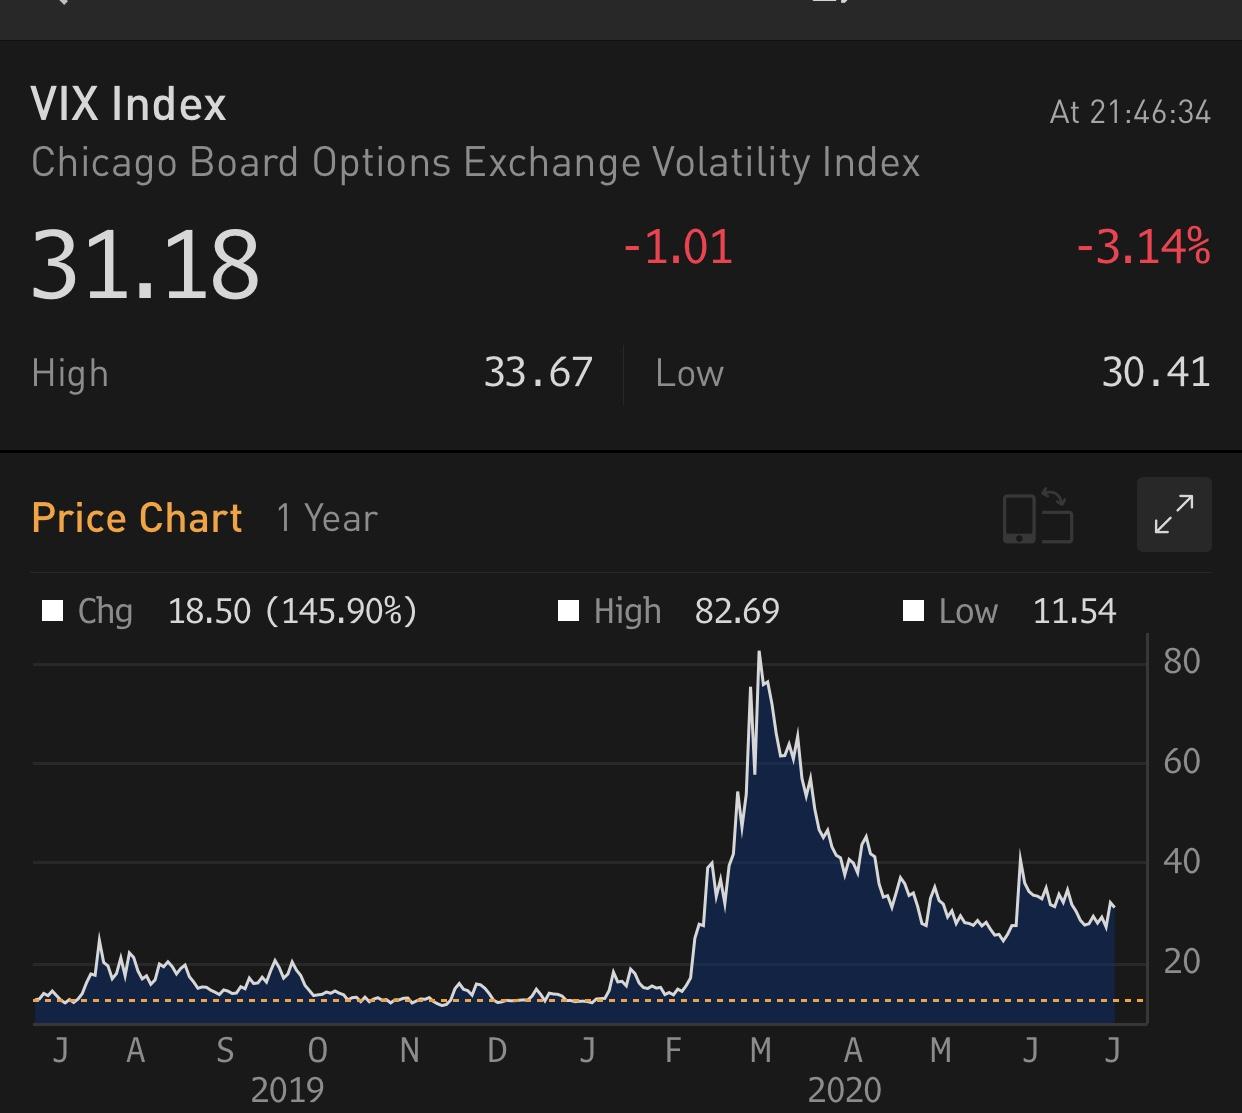 VIX bật tăng có thể là tín hiệu đánh lừa thị trường chứng khoán nếu như chúng ta không chú ý tới những điều này